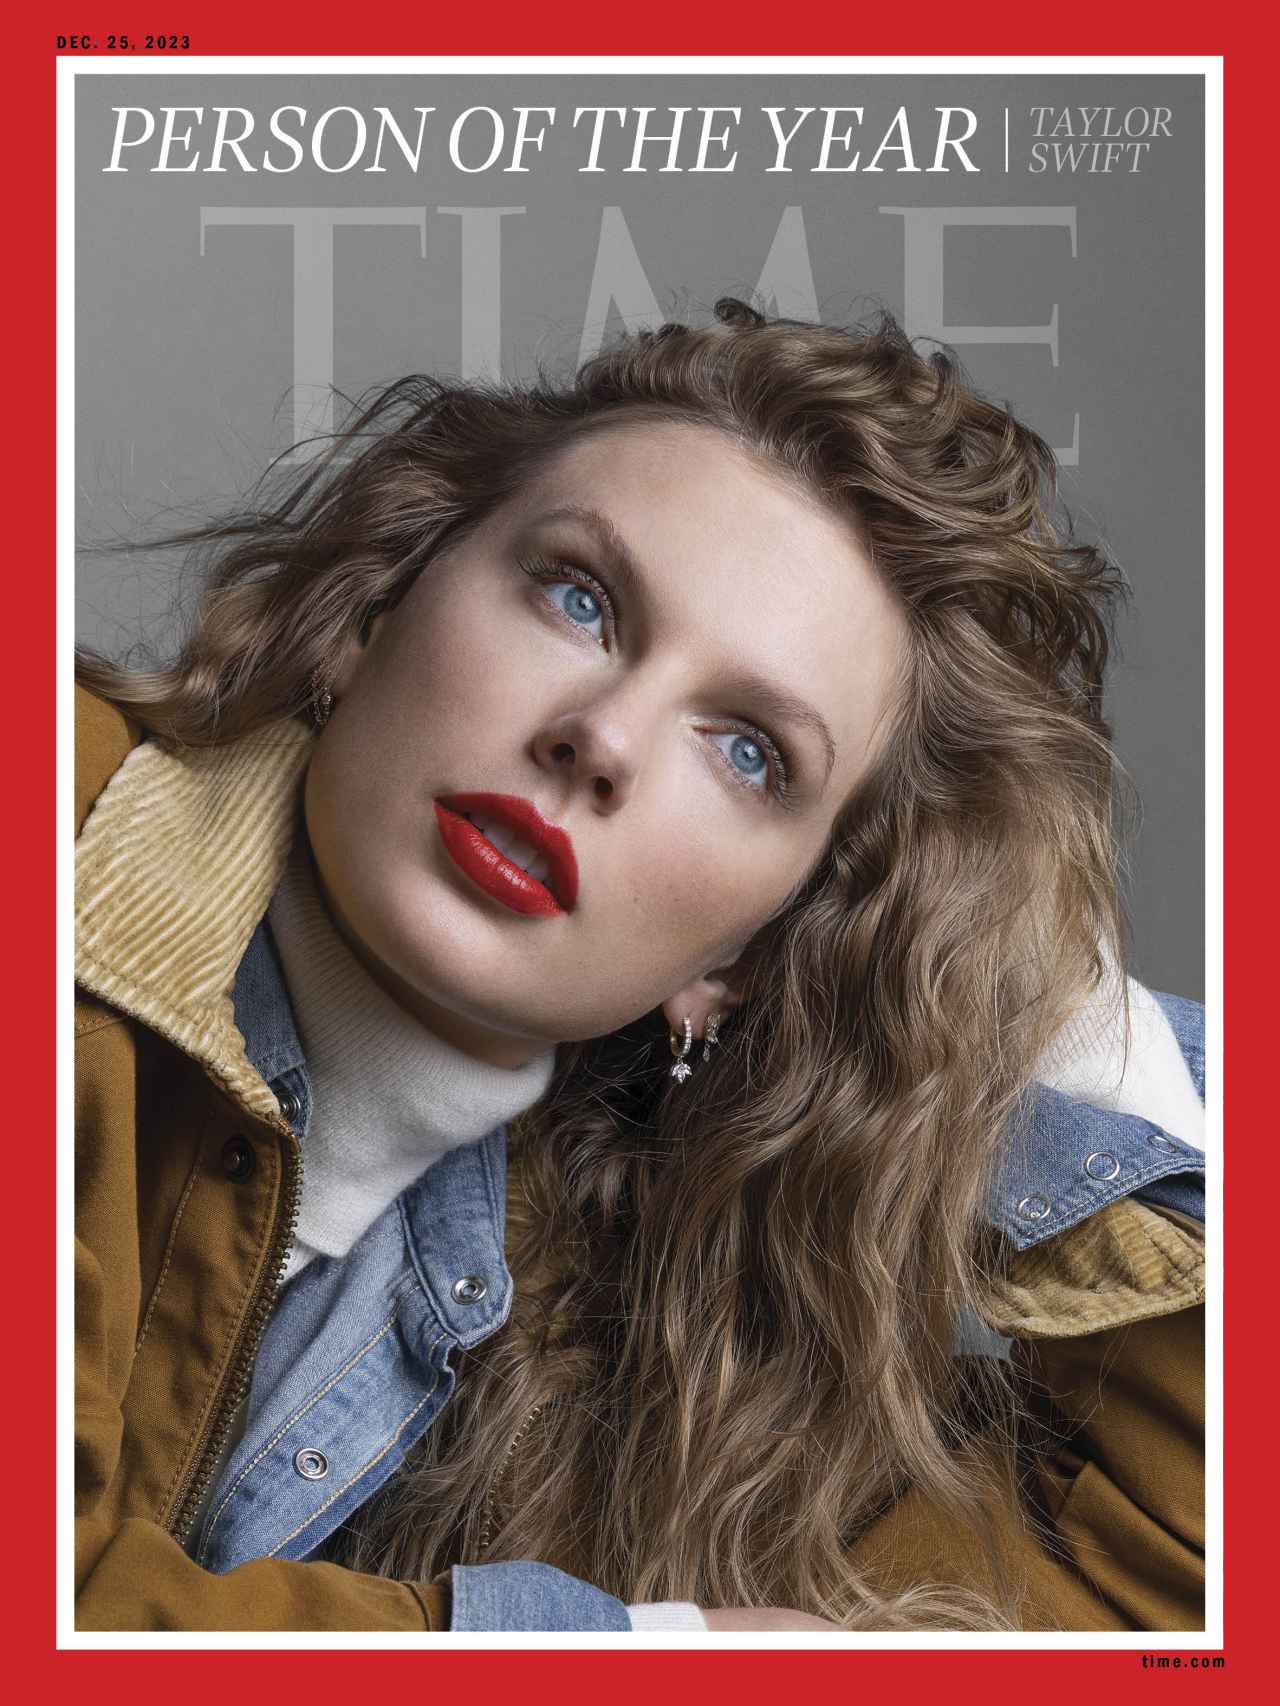 Portada de la revista 'Time' con Taylor Swift.